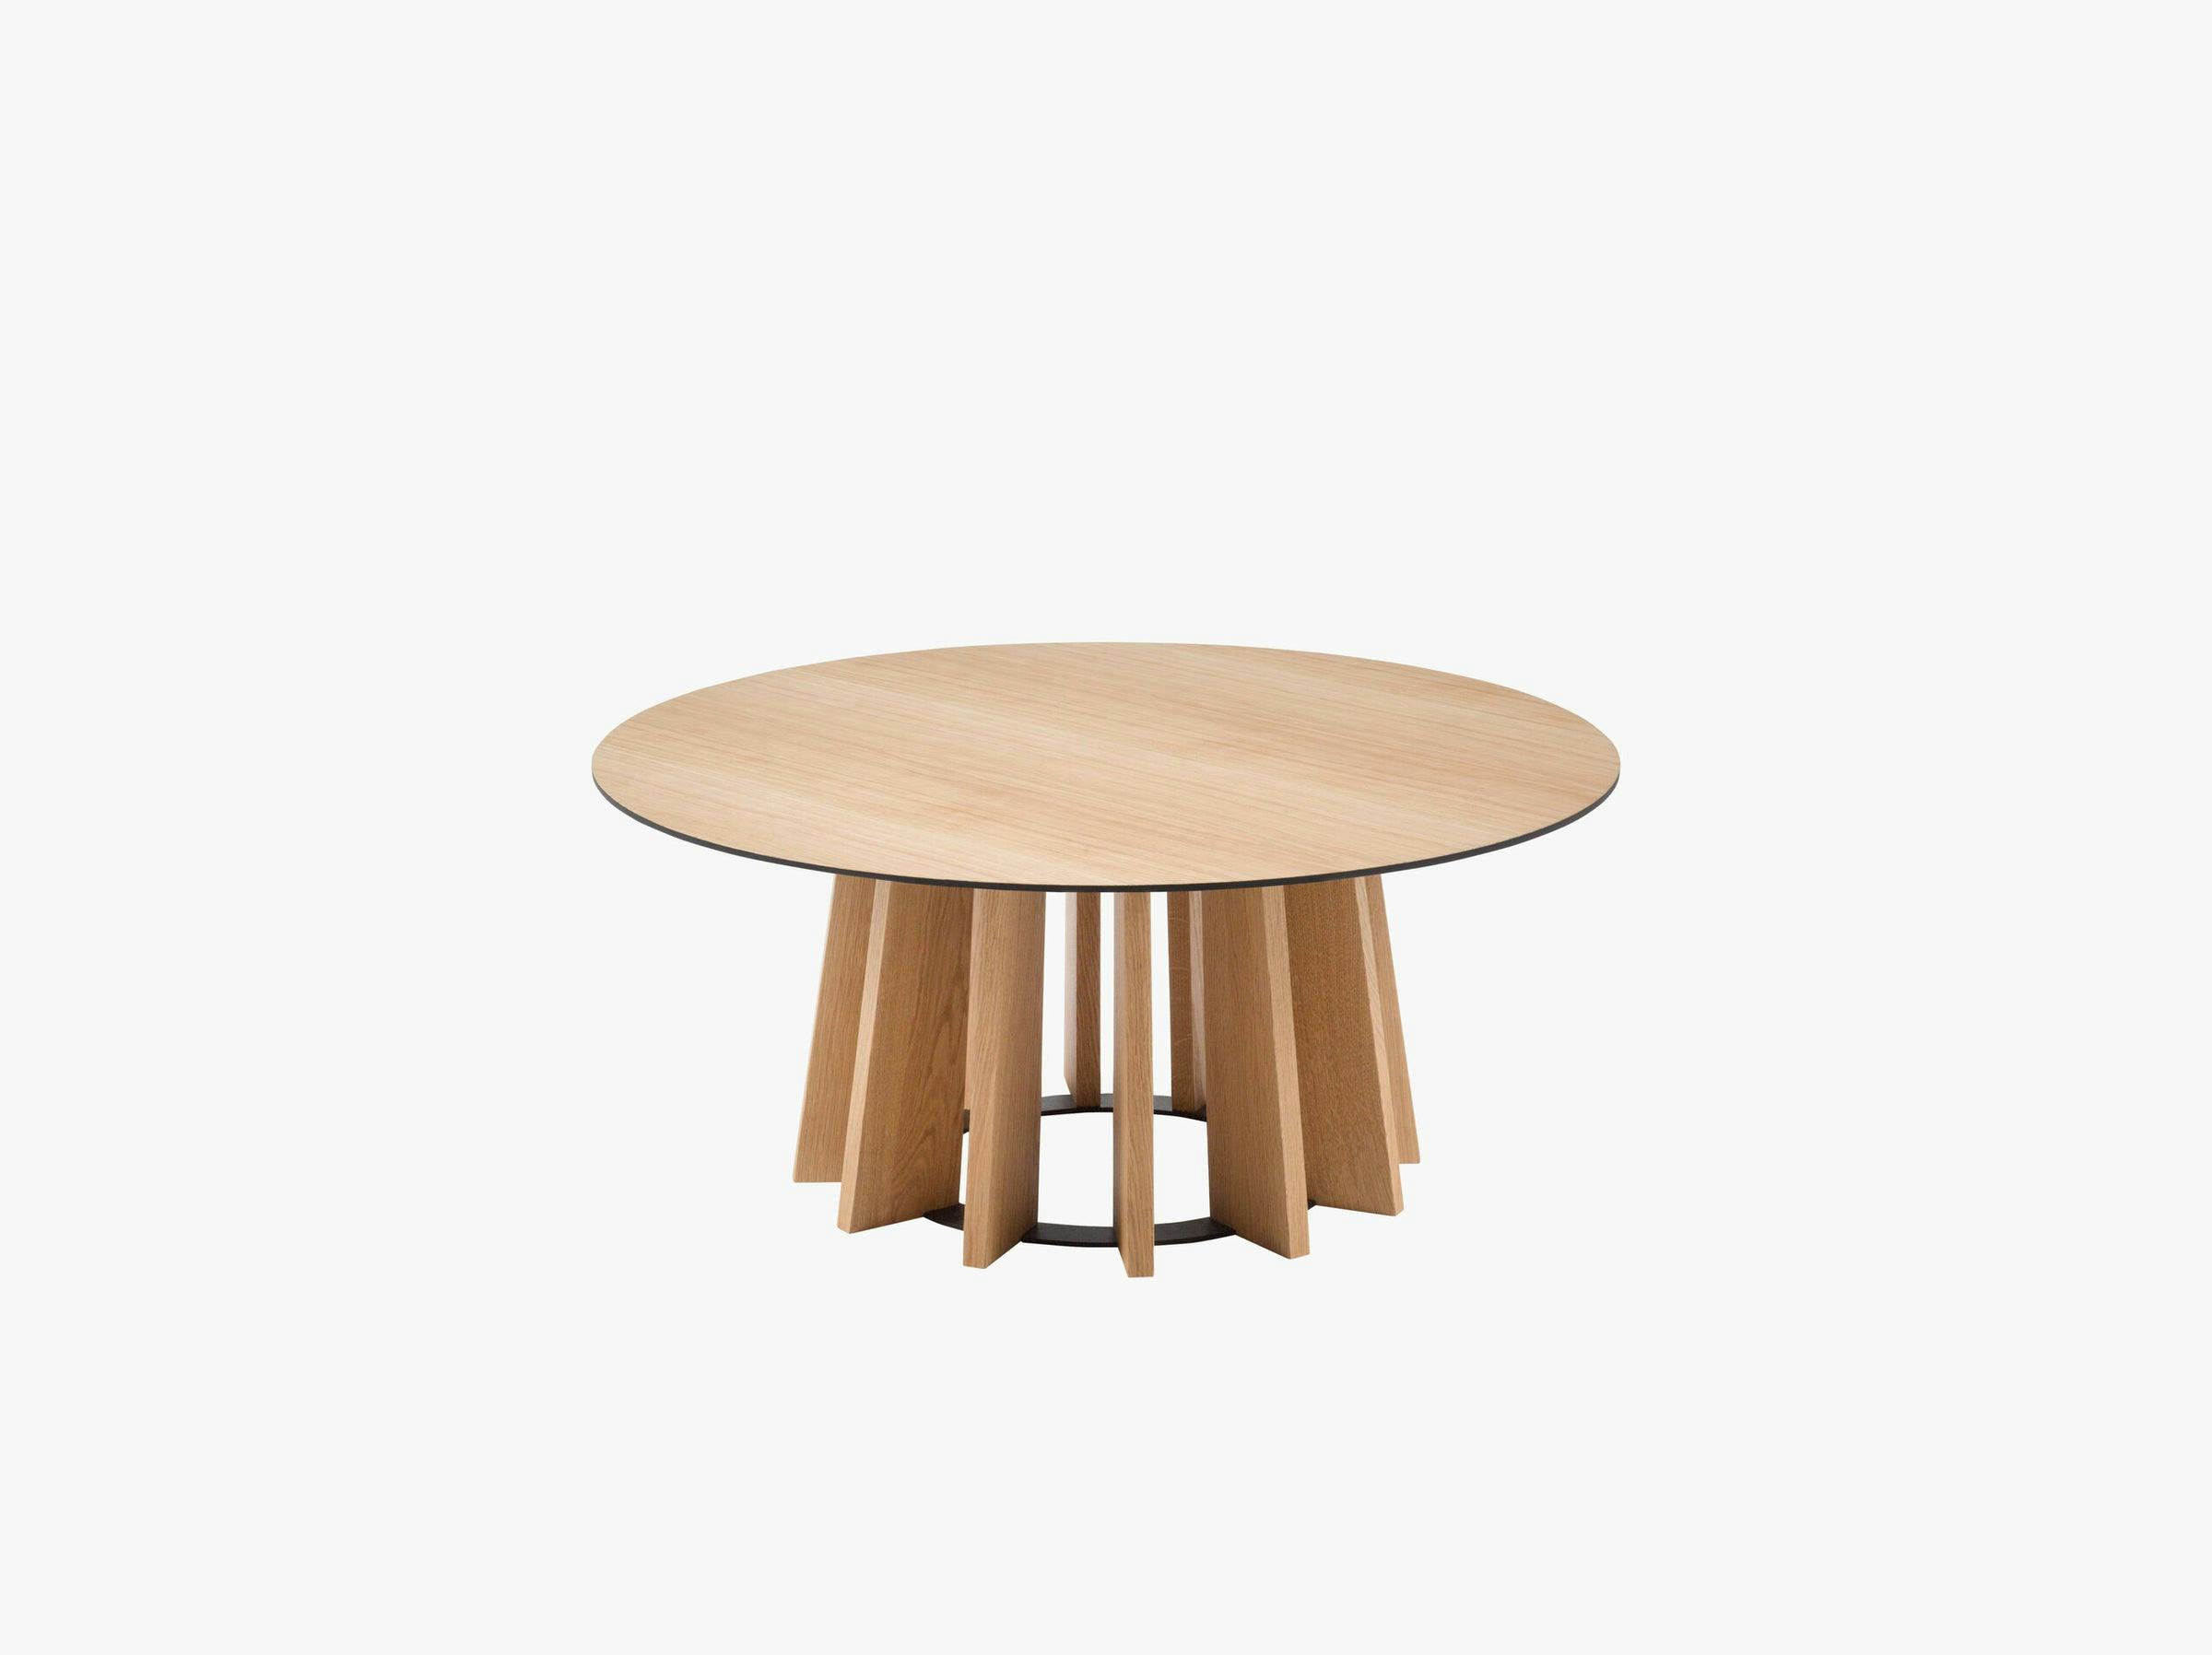 Mojave tables & chairs wood natural oak veneer